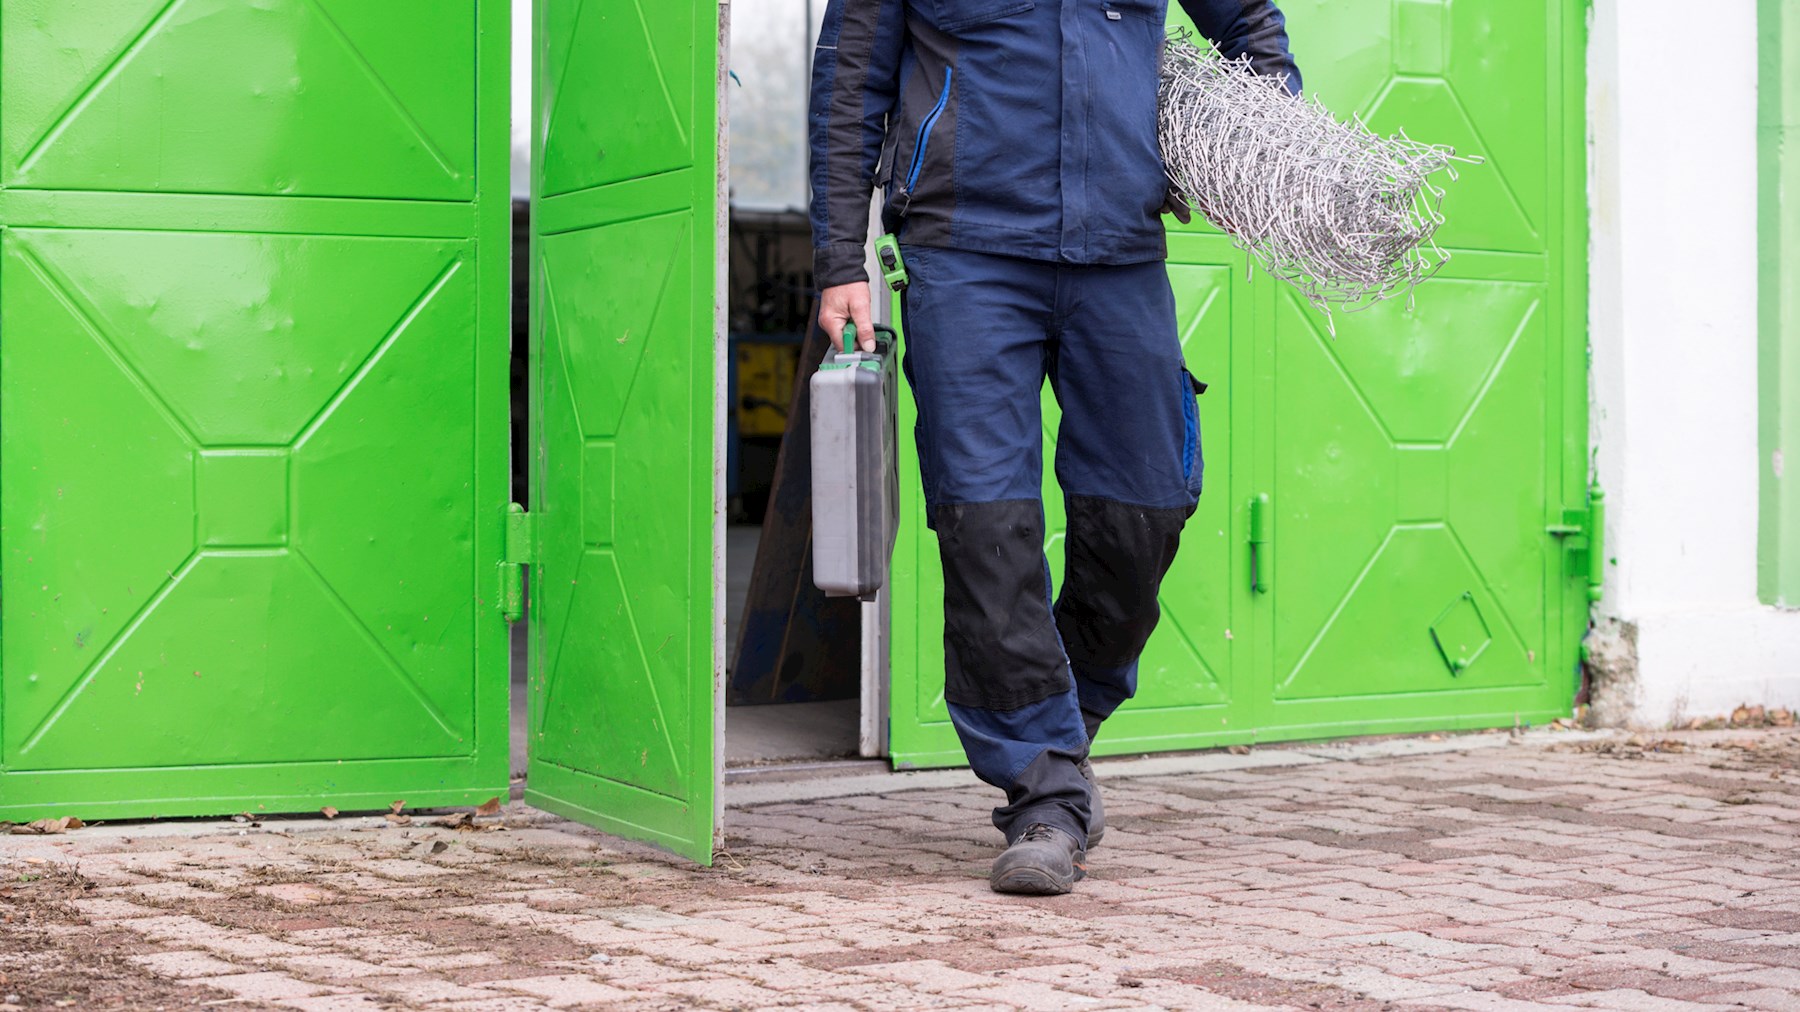 Mann in blauer Arbeitskleidung verlässt die Leo Werkstatt durch eine hellgrüne Tür. Unter seinem linken Arm trägt er eine Rolle Zaundraht. In seiner rechten Hand einen Werkzeugkoffer.